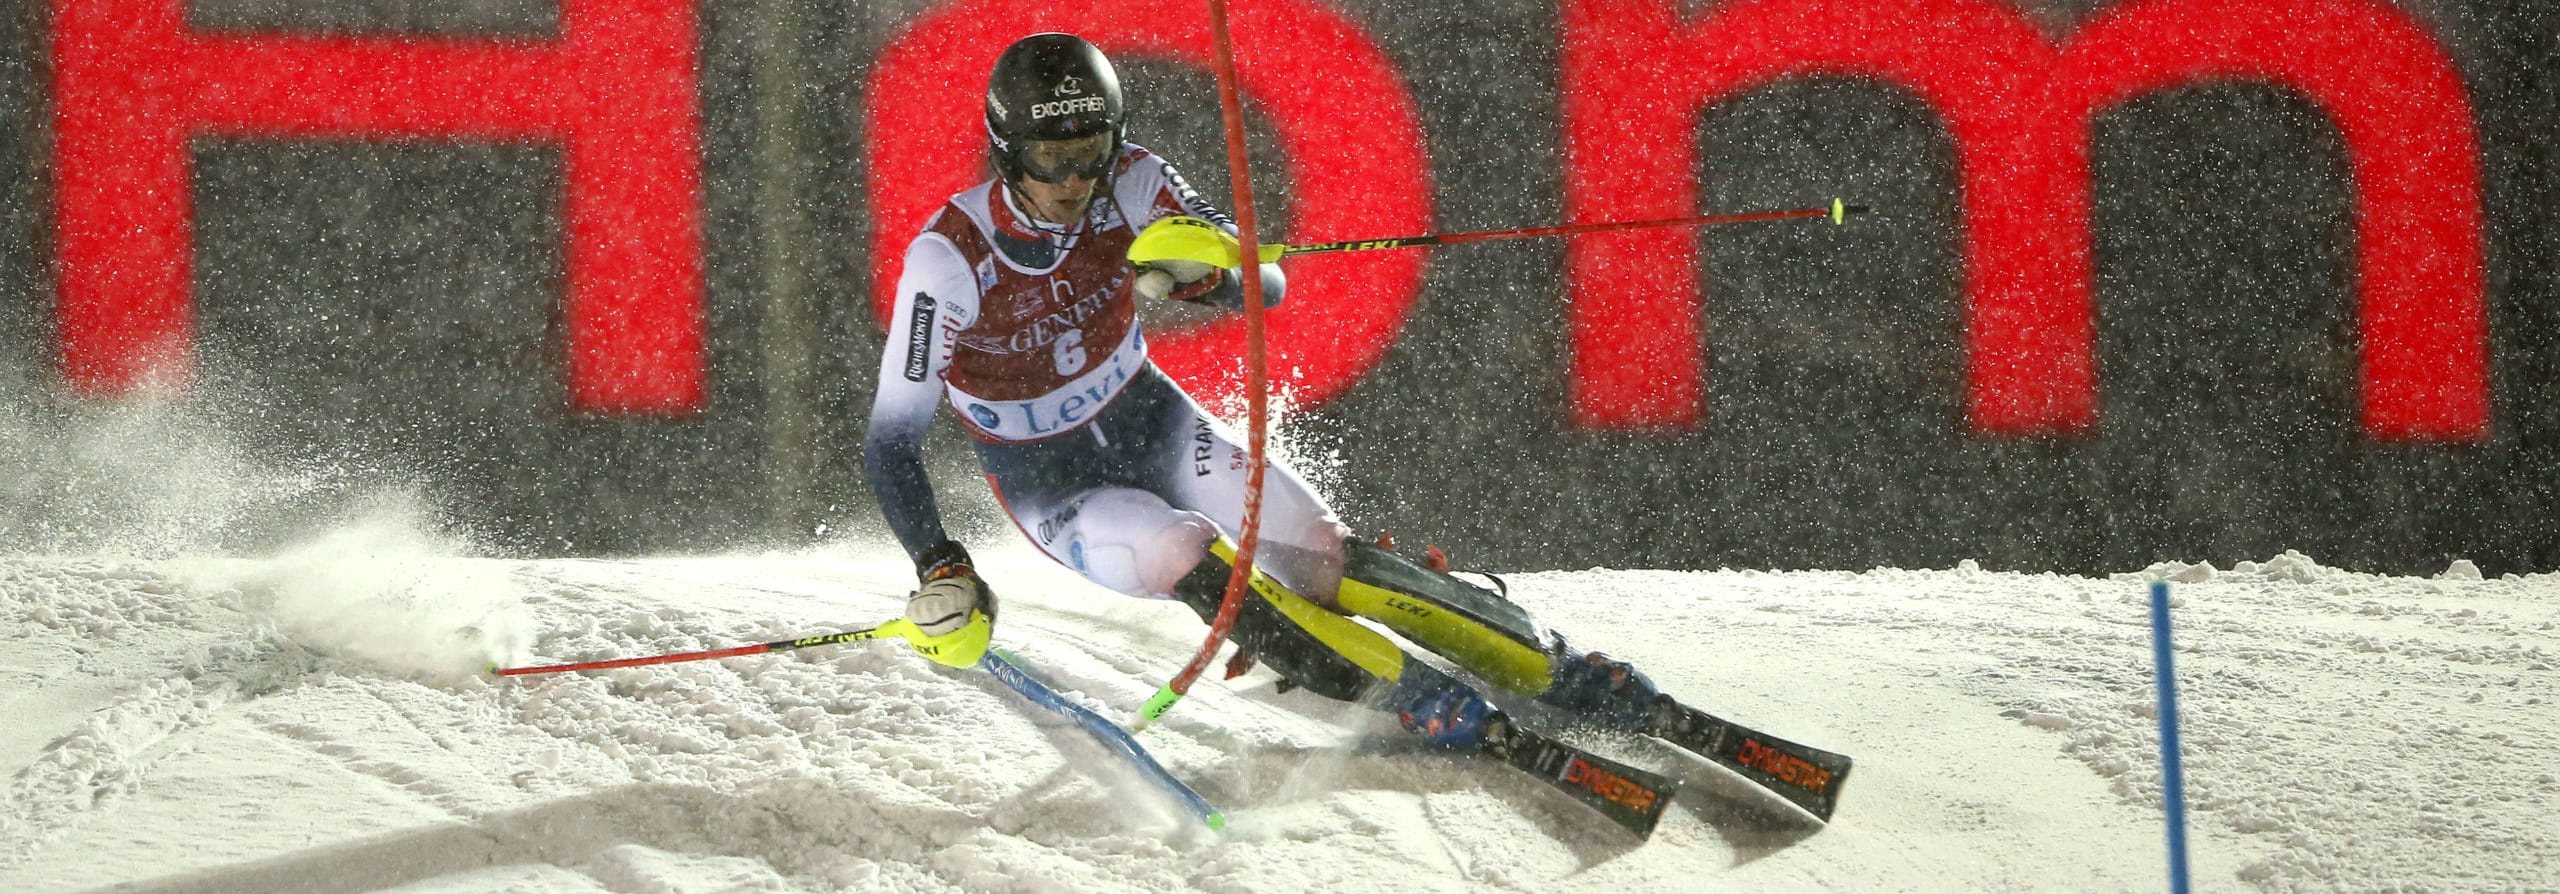 Coppa del Mondo di Sci, Slalom Val d'Isere: Noël si regalerà la prima vittoria in patria?